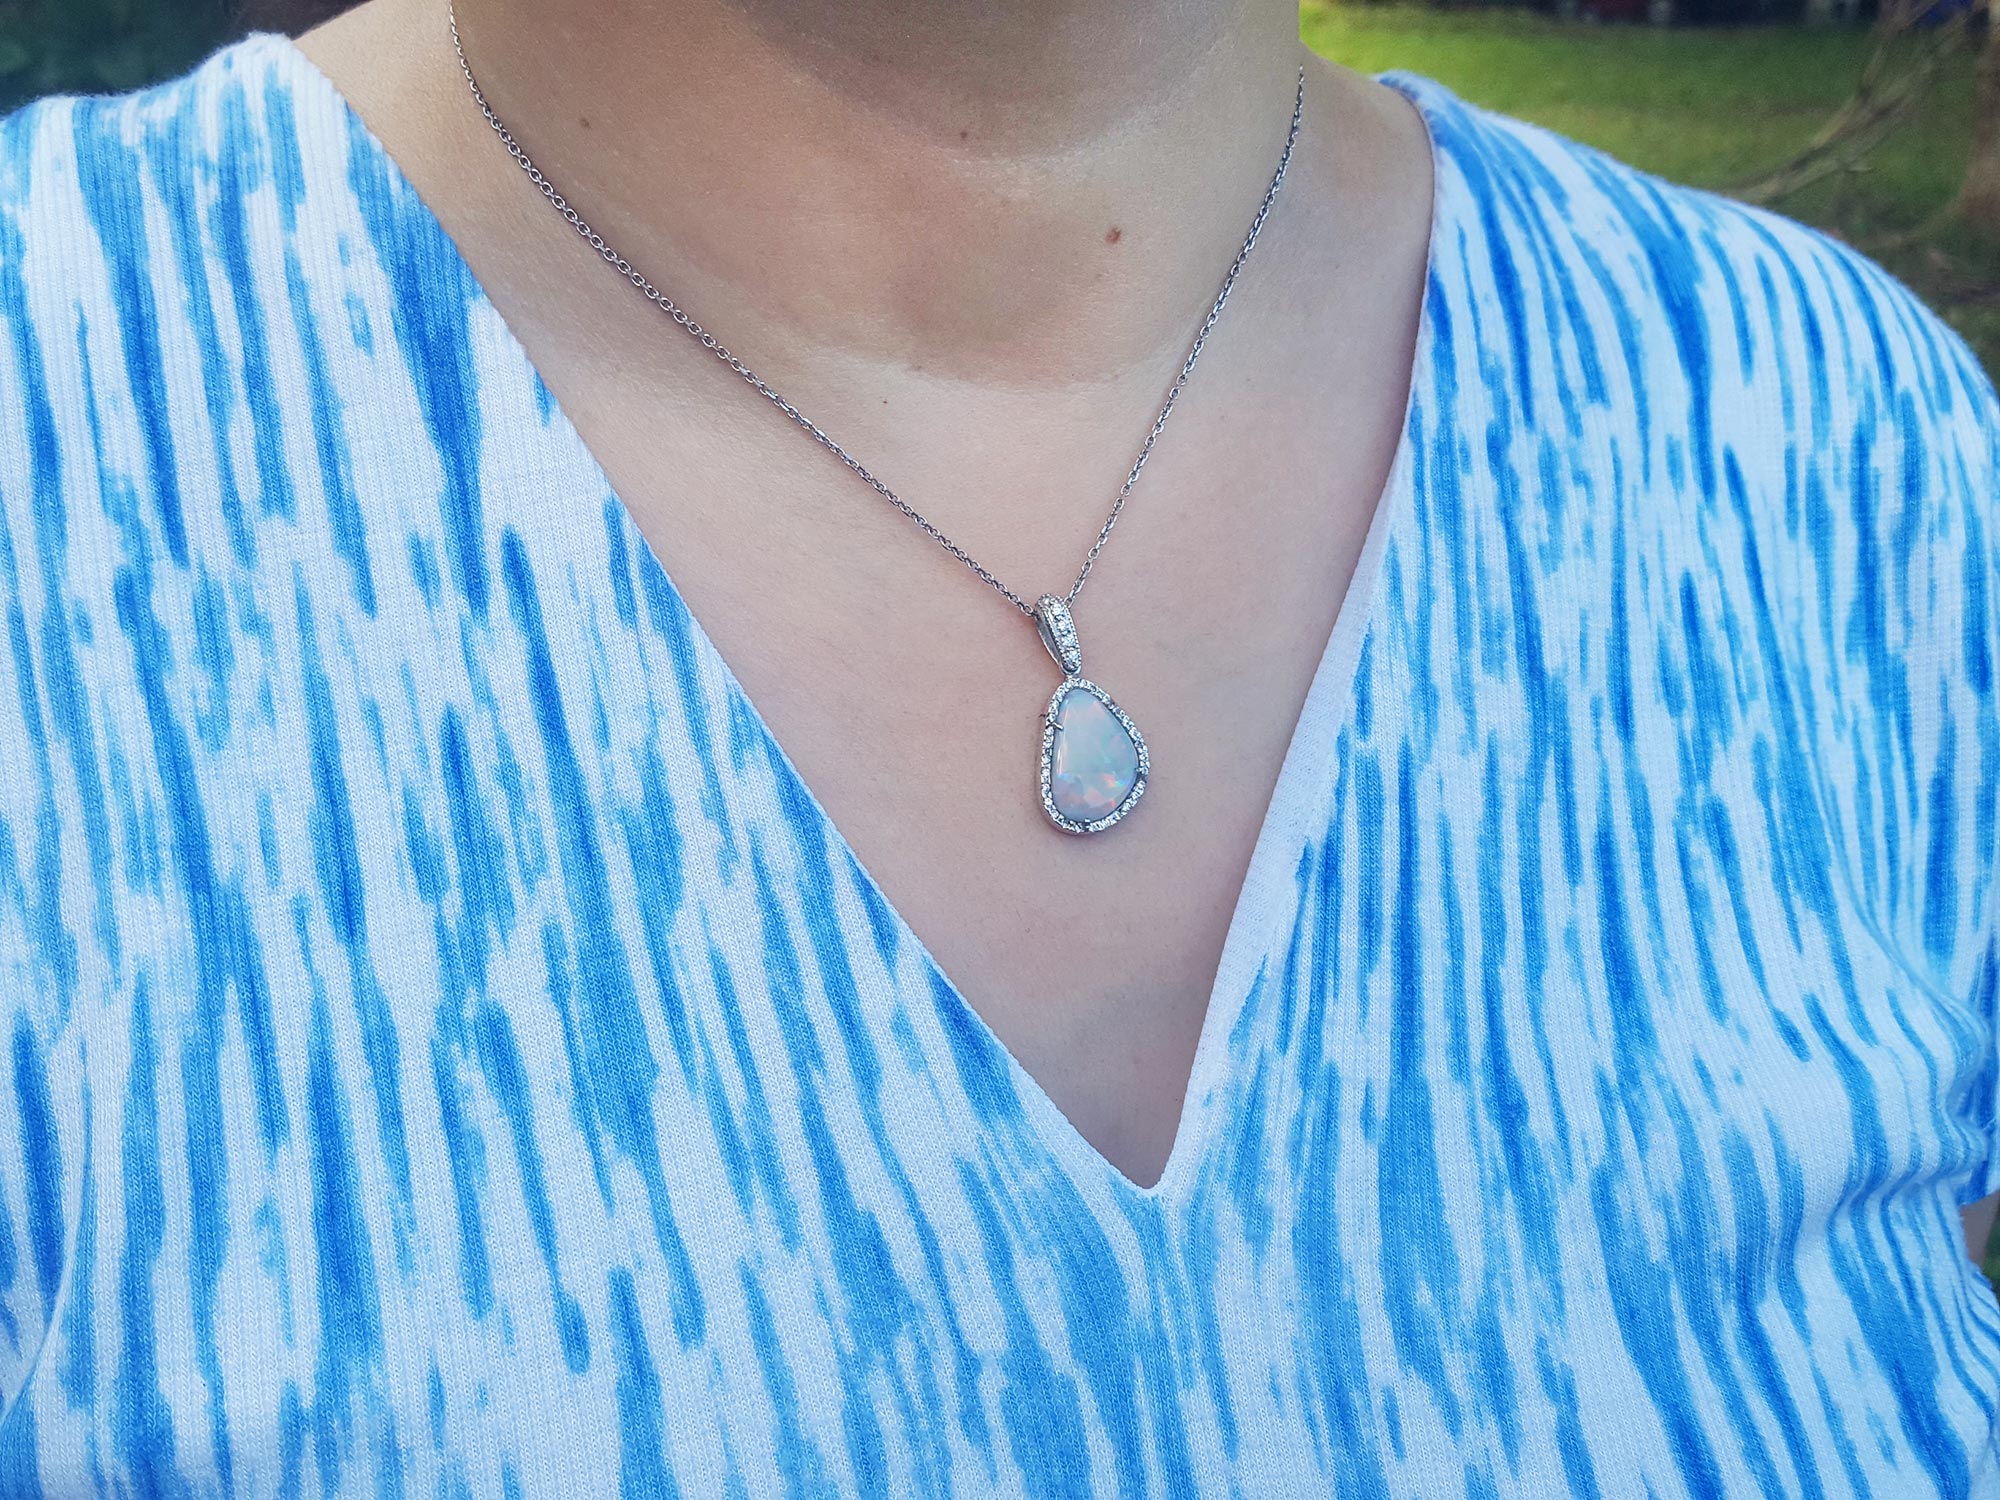 Earth mined Australian opal necklace